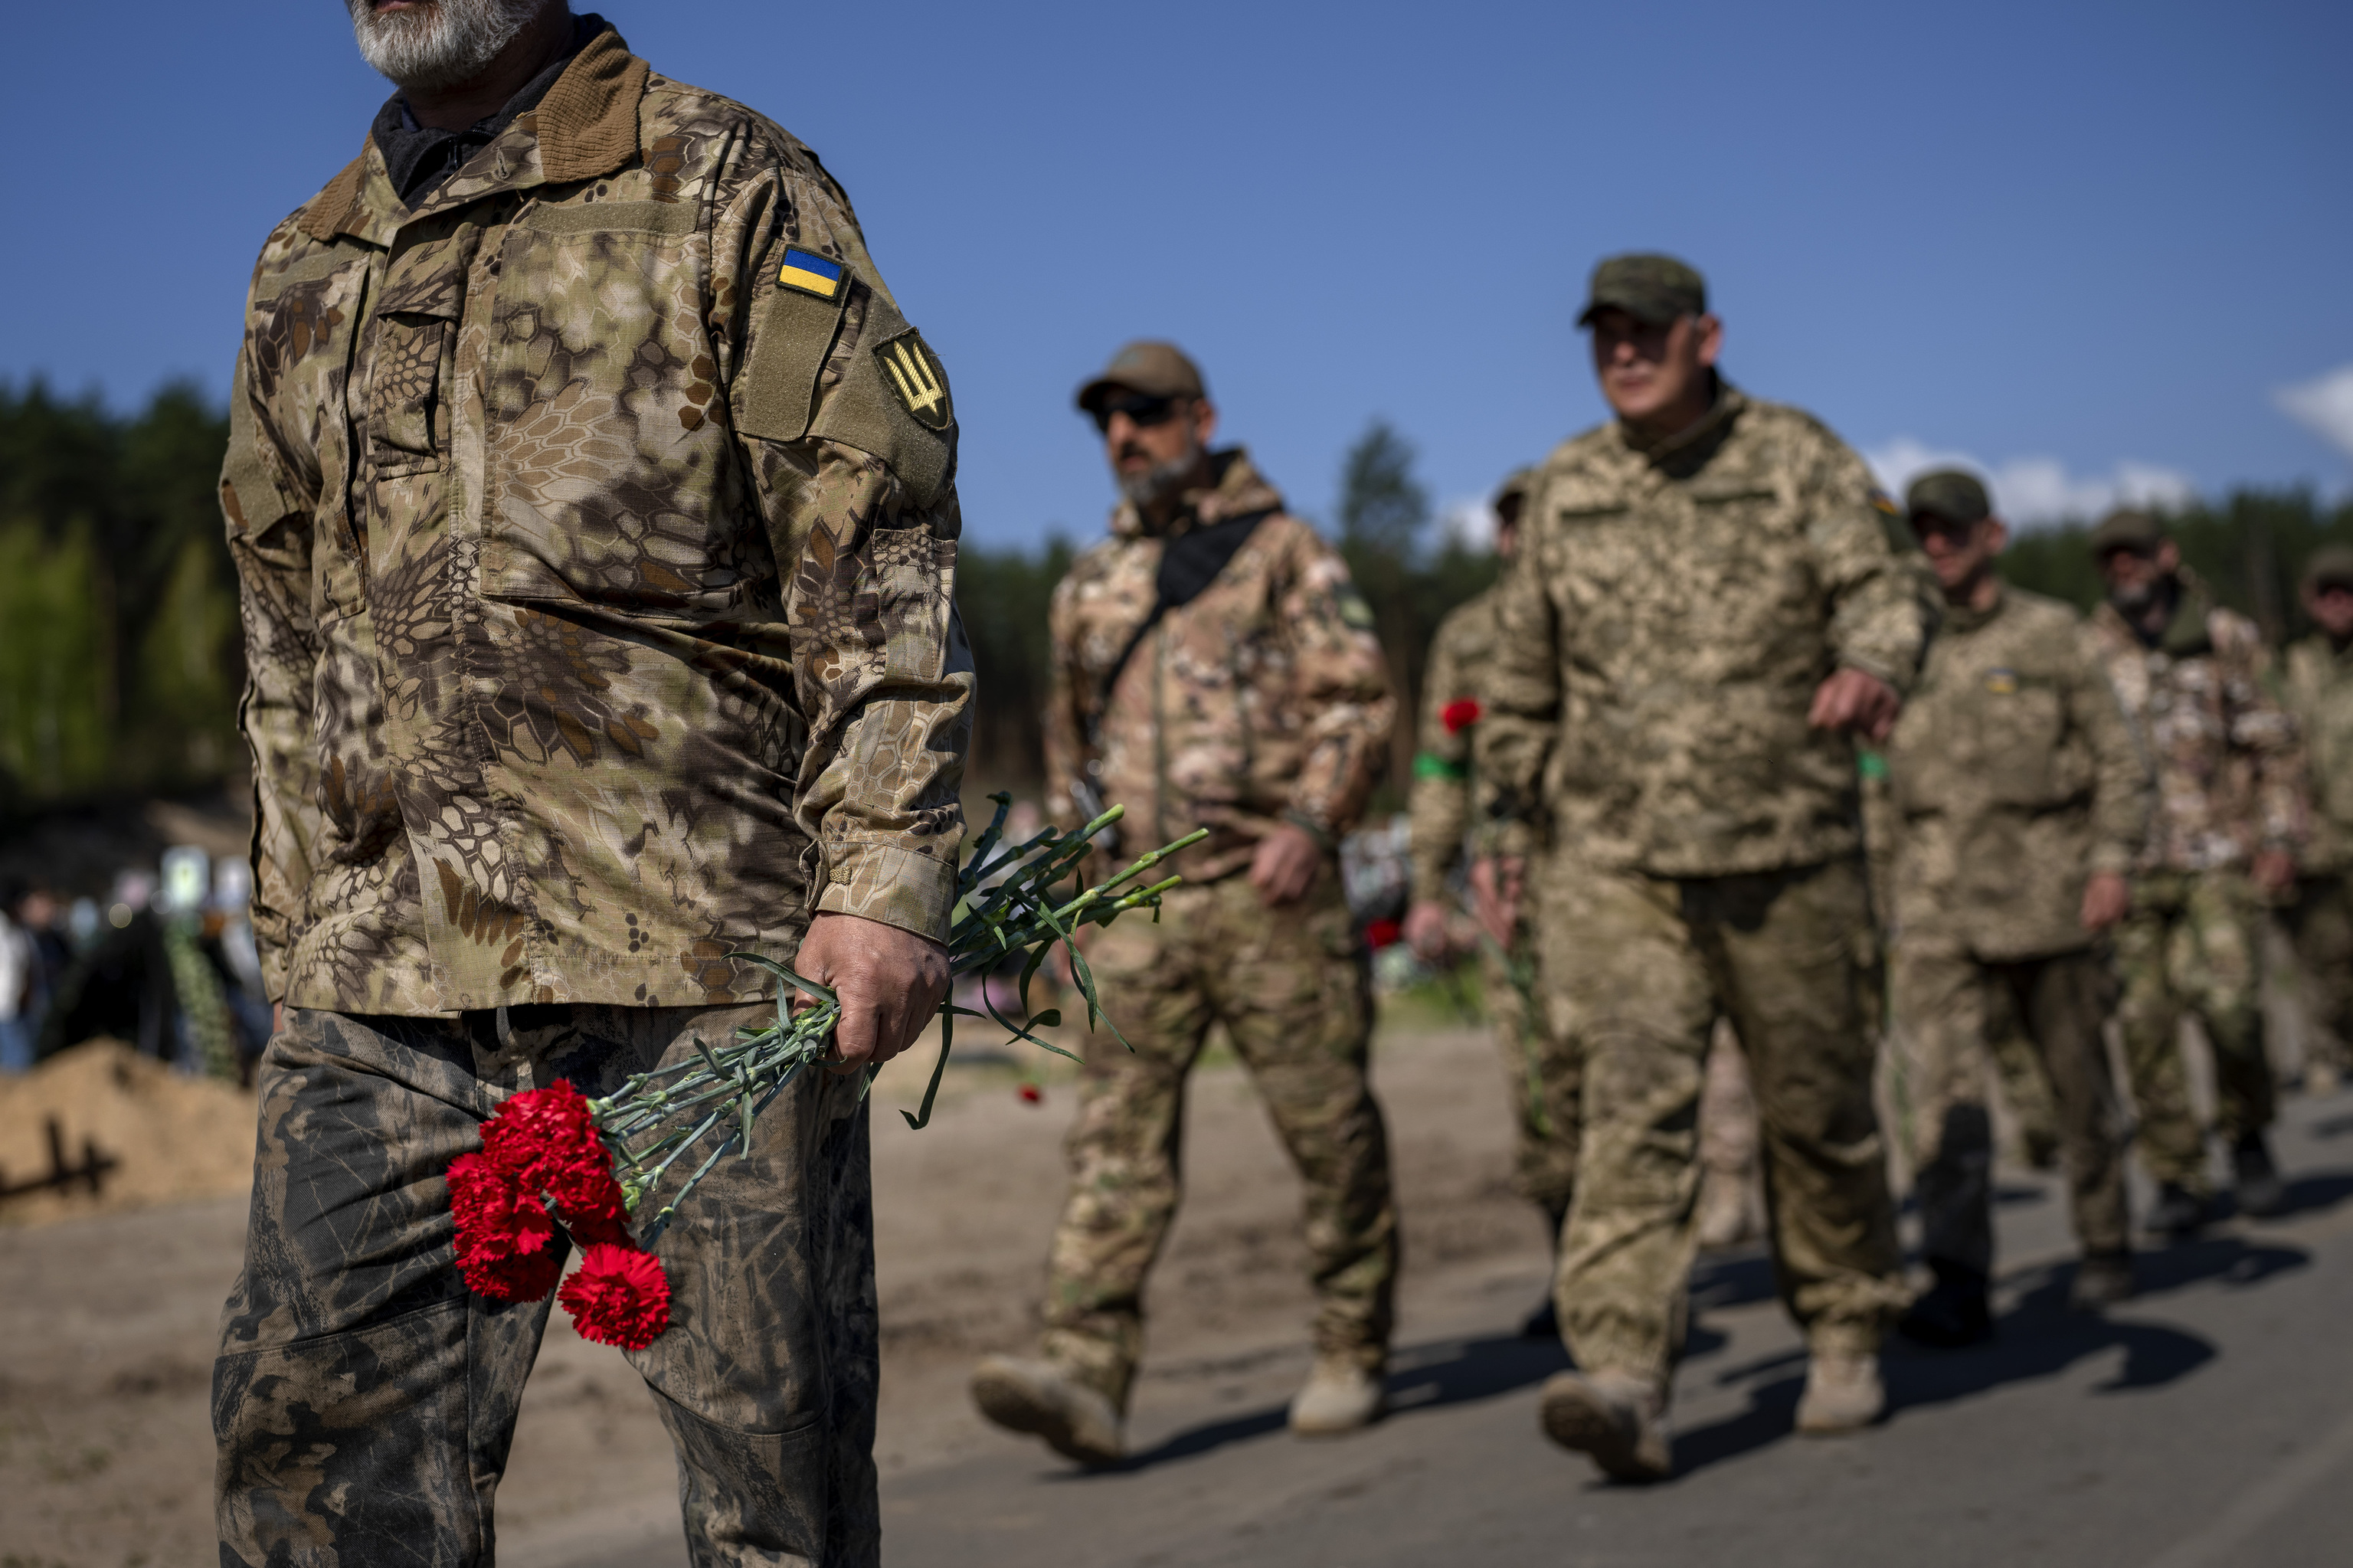 Homenaje de los soldados ucranianos de Irpin a sus compañeros muertos en la ocupación rusa.